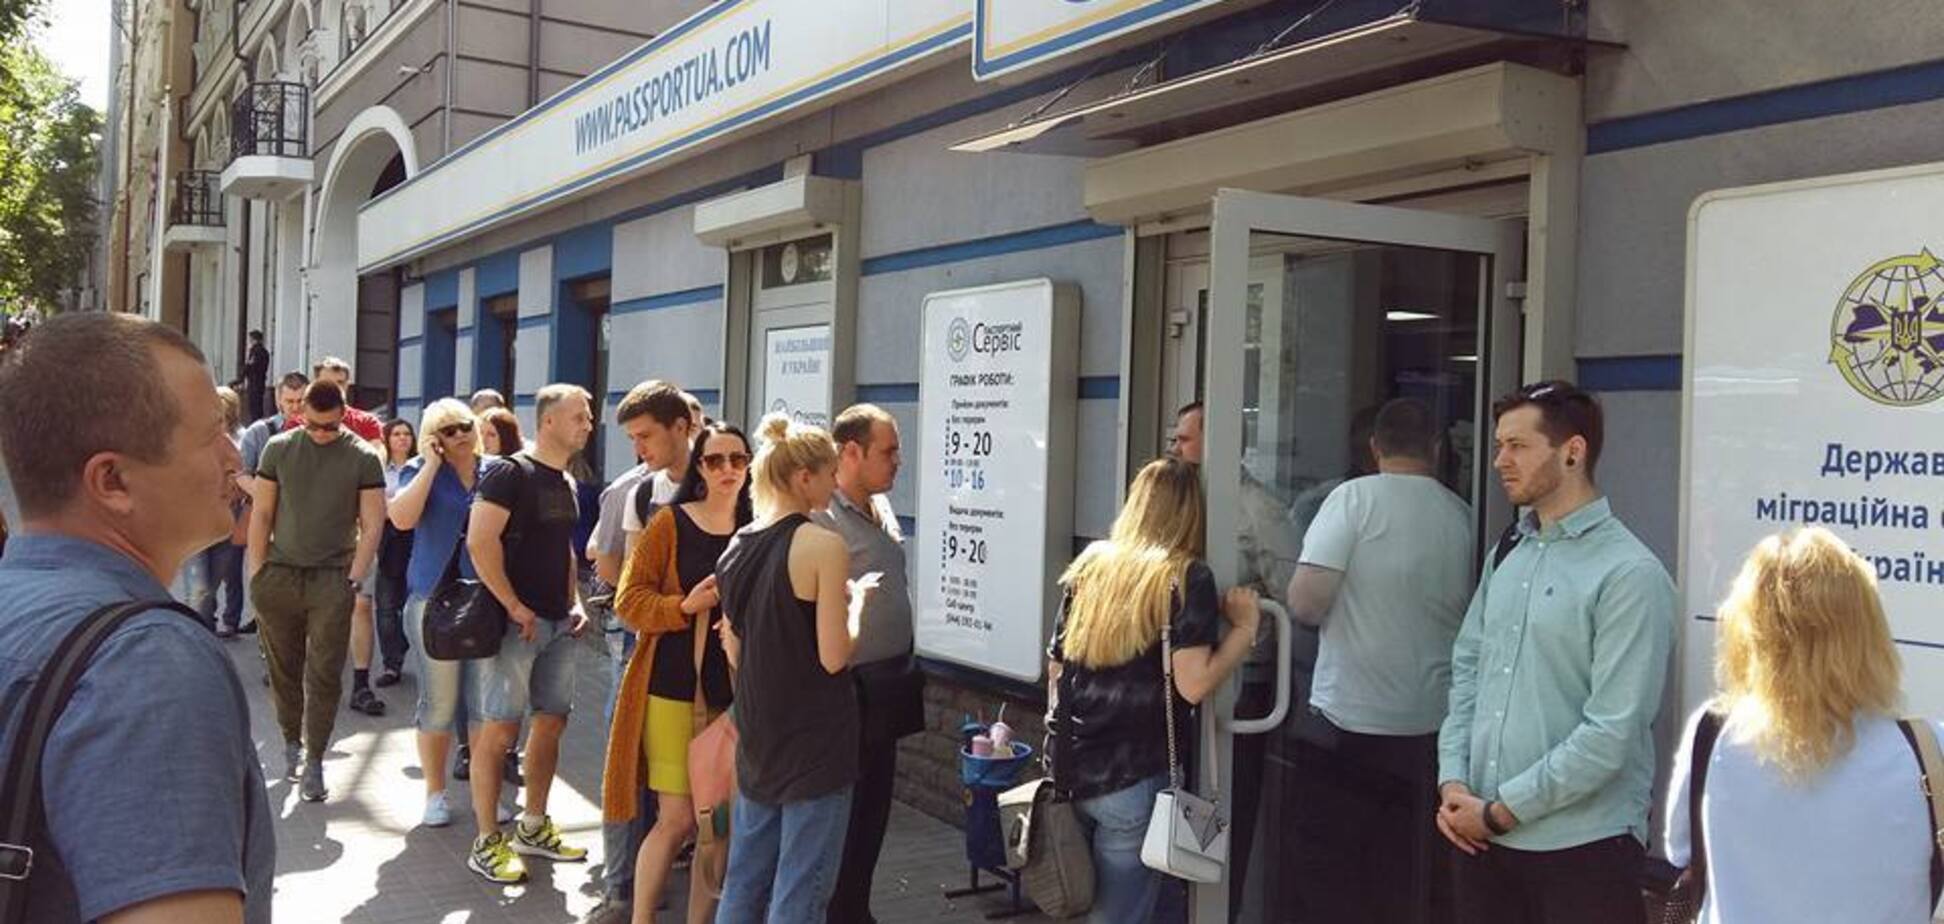 Черги не зникли: озвучені головні проблеми оформлення 'біометрики' в Україні